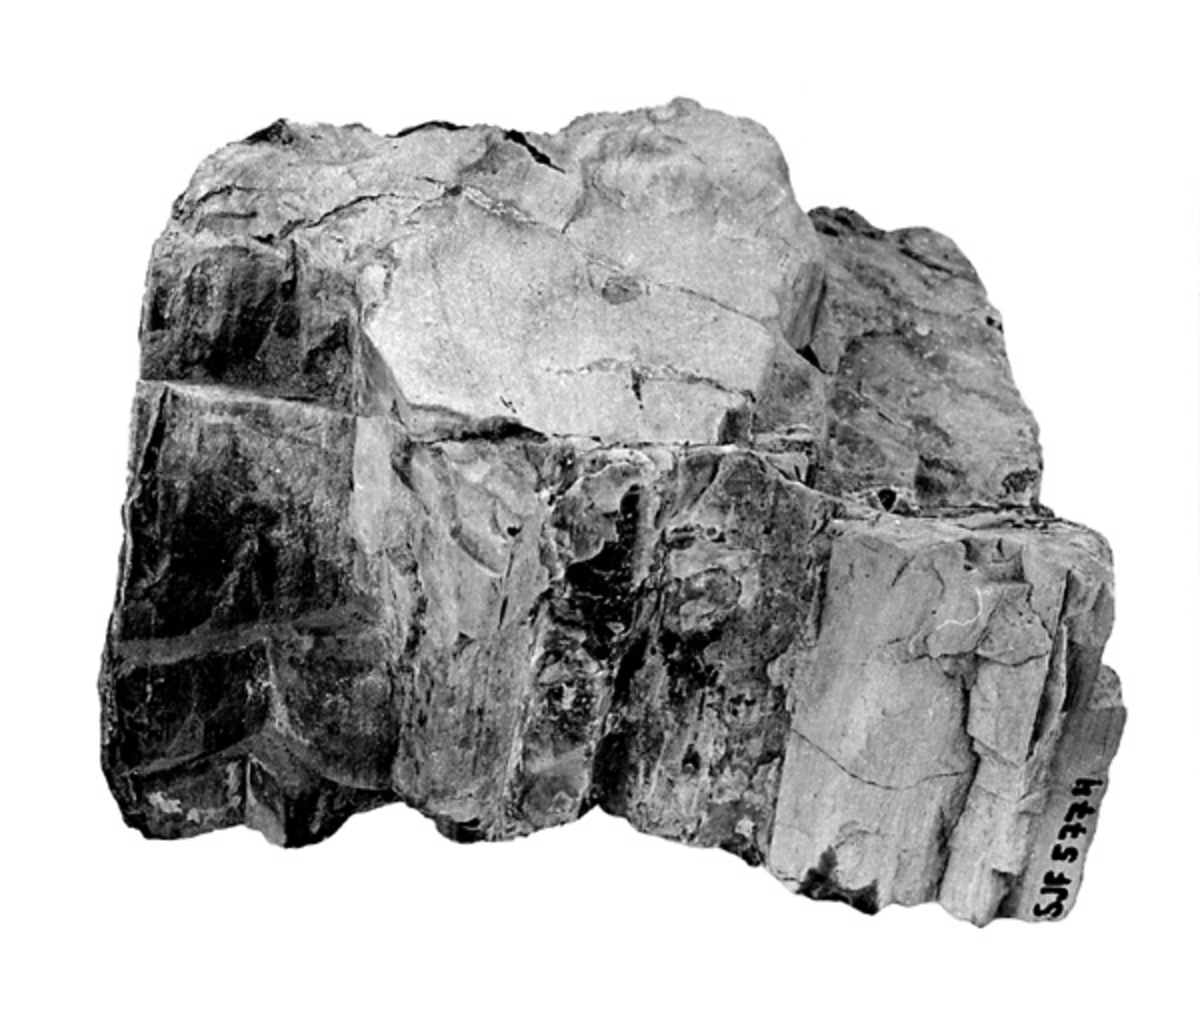 Det fossile treet har en gråbrun farge. Treet stammer fra jura-tida og er blitt forkislet. Det er ca. 190 millioner år gammelt.  Det er funnet på Kong Karls land sommeren 1979.  Se brev fra giveren i korrespondansepermen for innkomne gjenstander. 